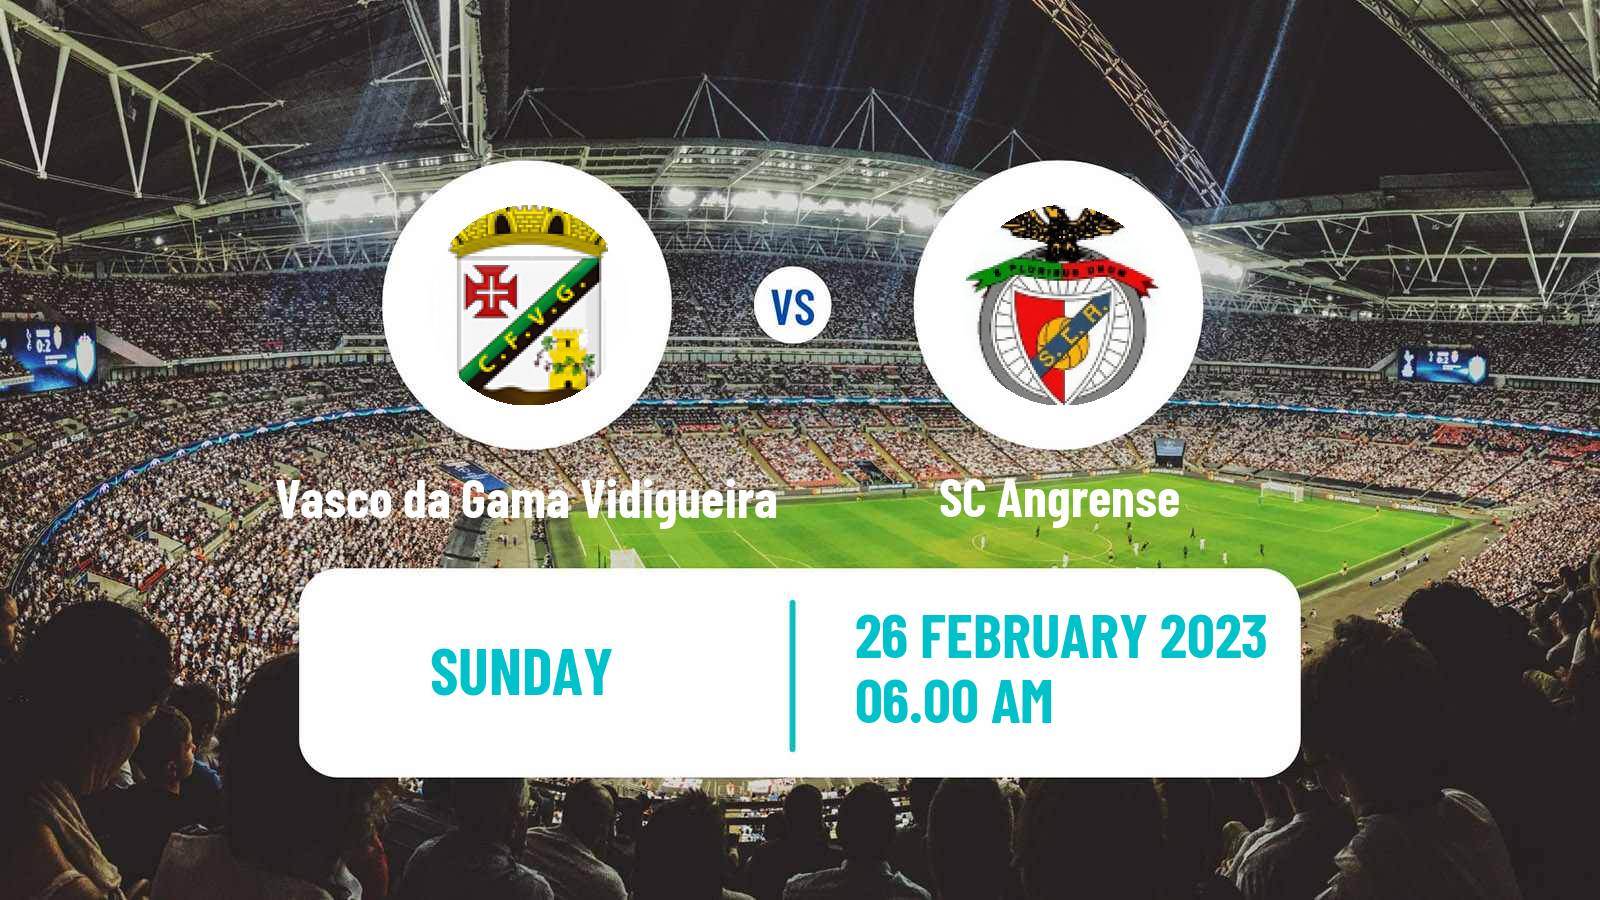 Soccer Campeonato de Portugal Vasco da Gama Vidigueira - Angrense